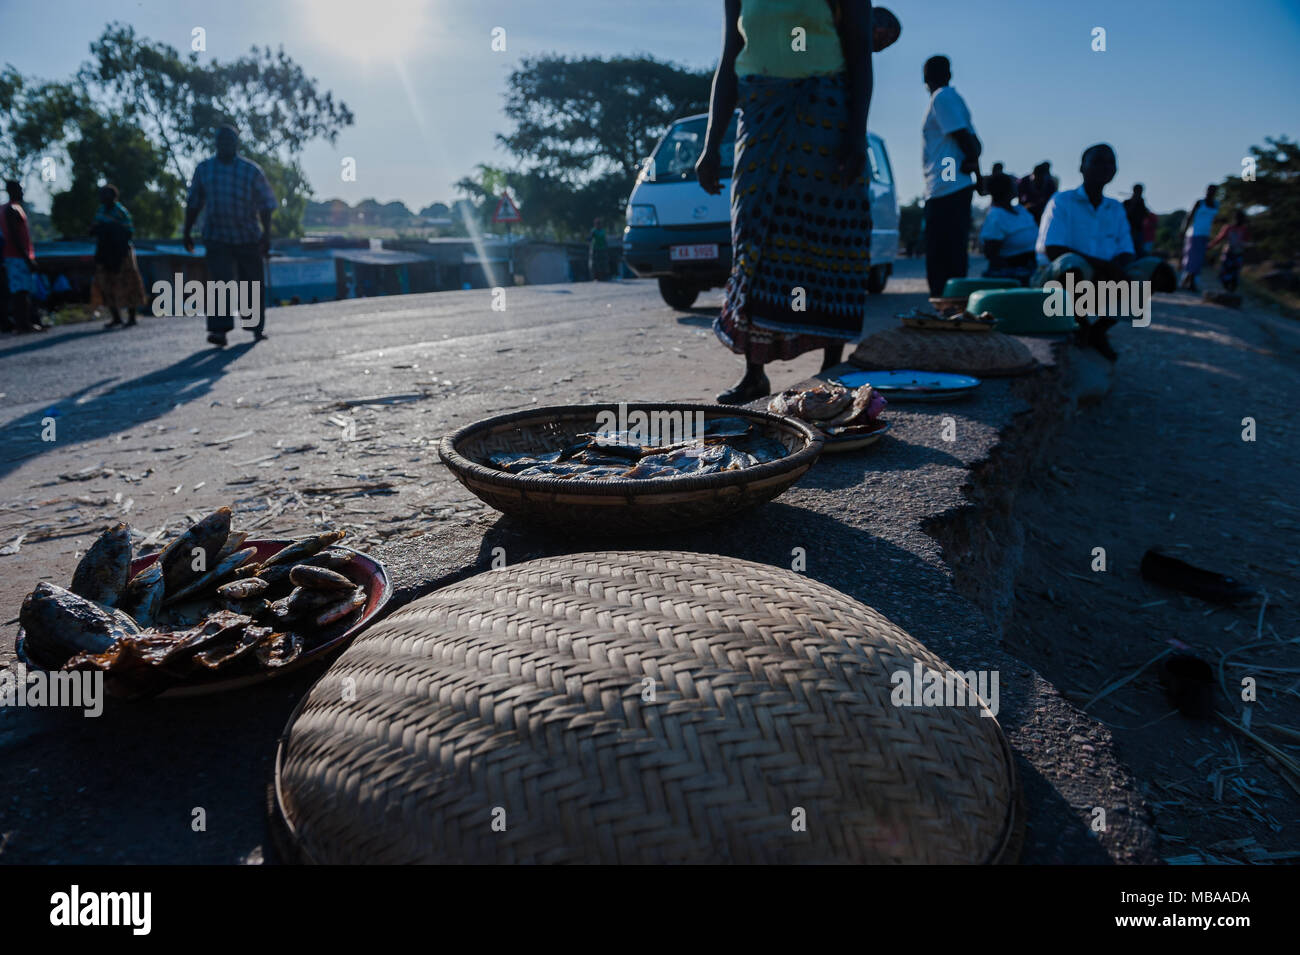 El pescado seco se vende en la carretera en Malawi por un hawker Foto de stock